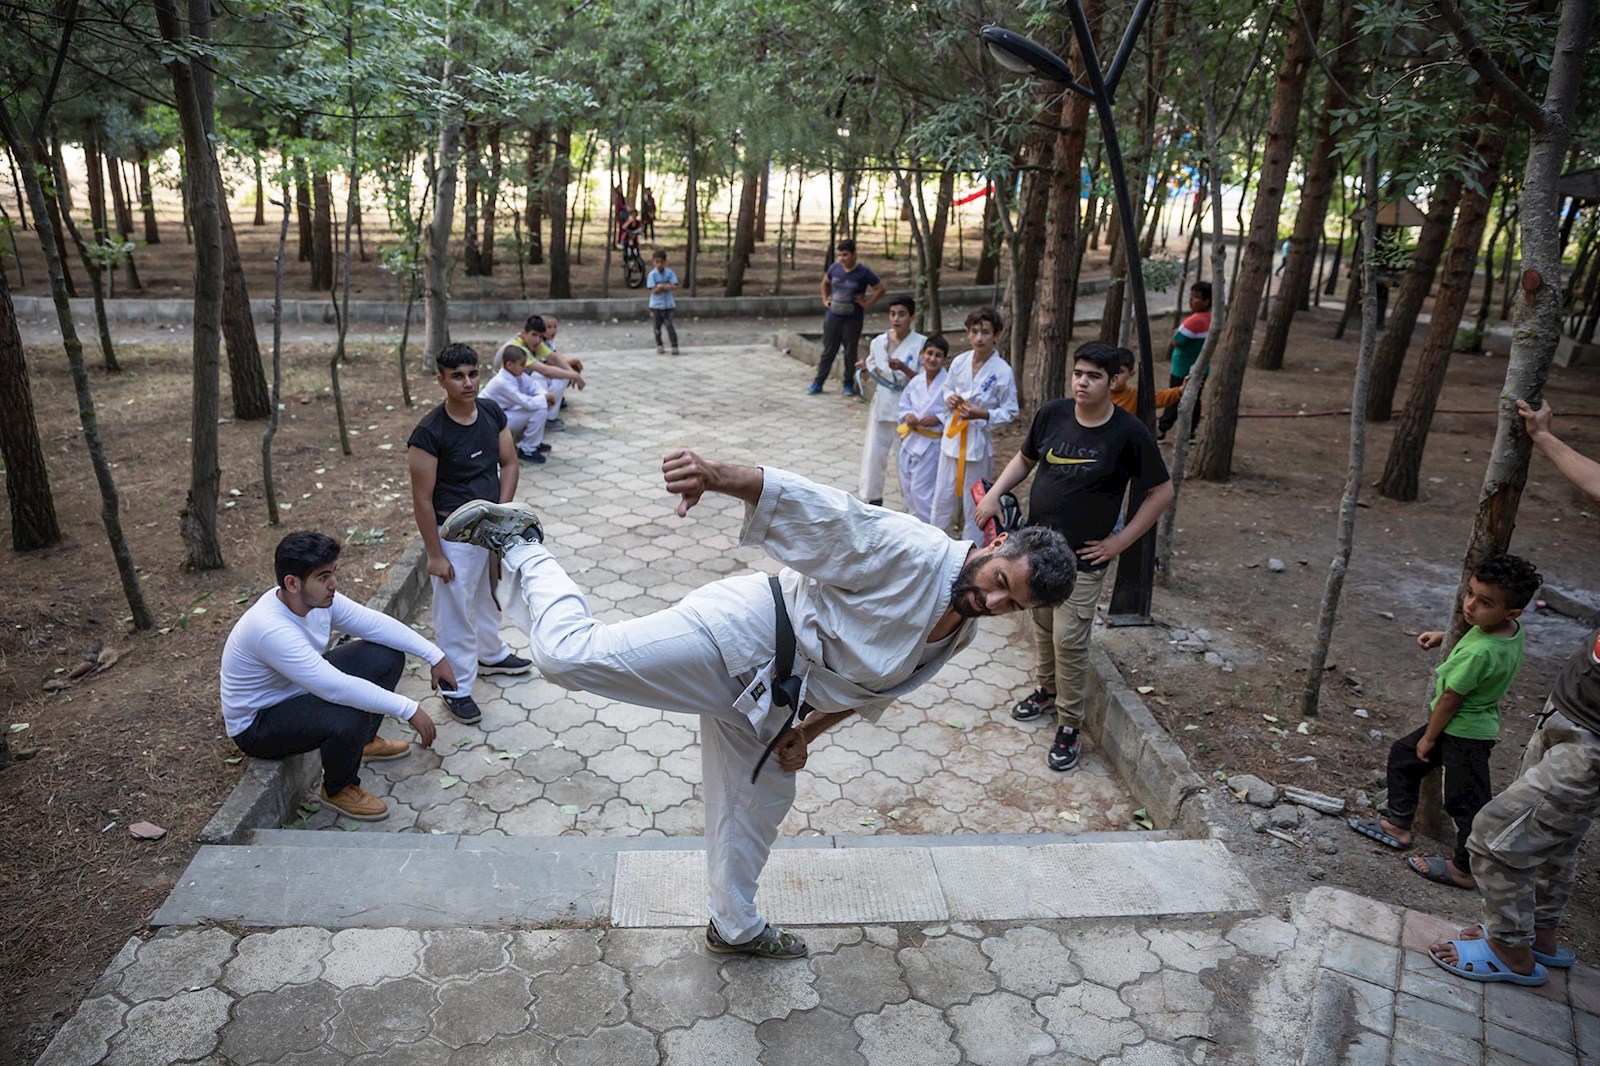 باشگاه کاراته آل یاسین حسن مهدی‌زاده اکنون پارک های گرمی شده است. ورزش کردن محدود به مکان  وسالن های ورزشی نیست  بلکه کار مهم است.